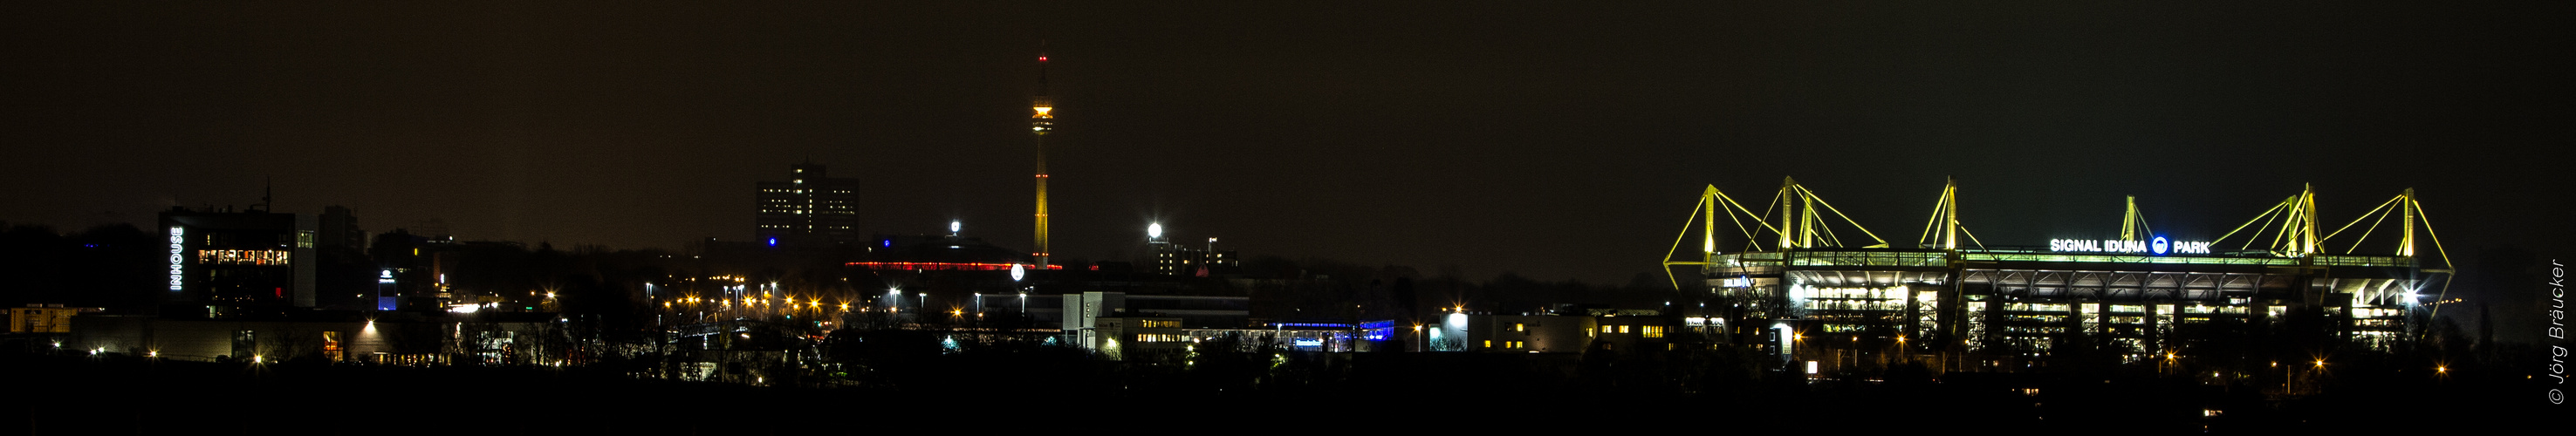 Dortmund @ Night (Skyline)